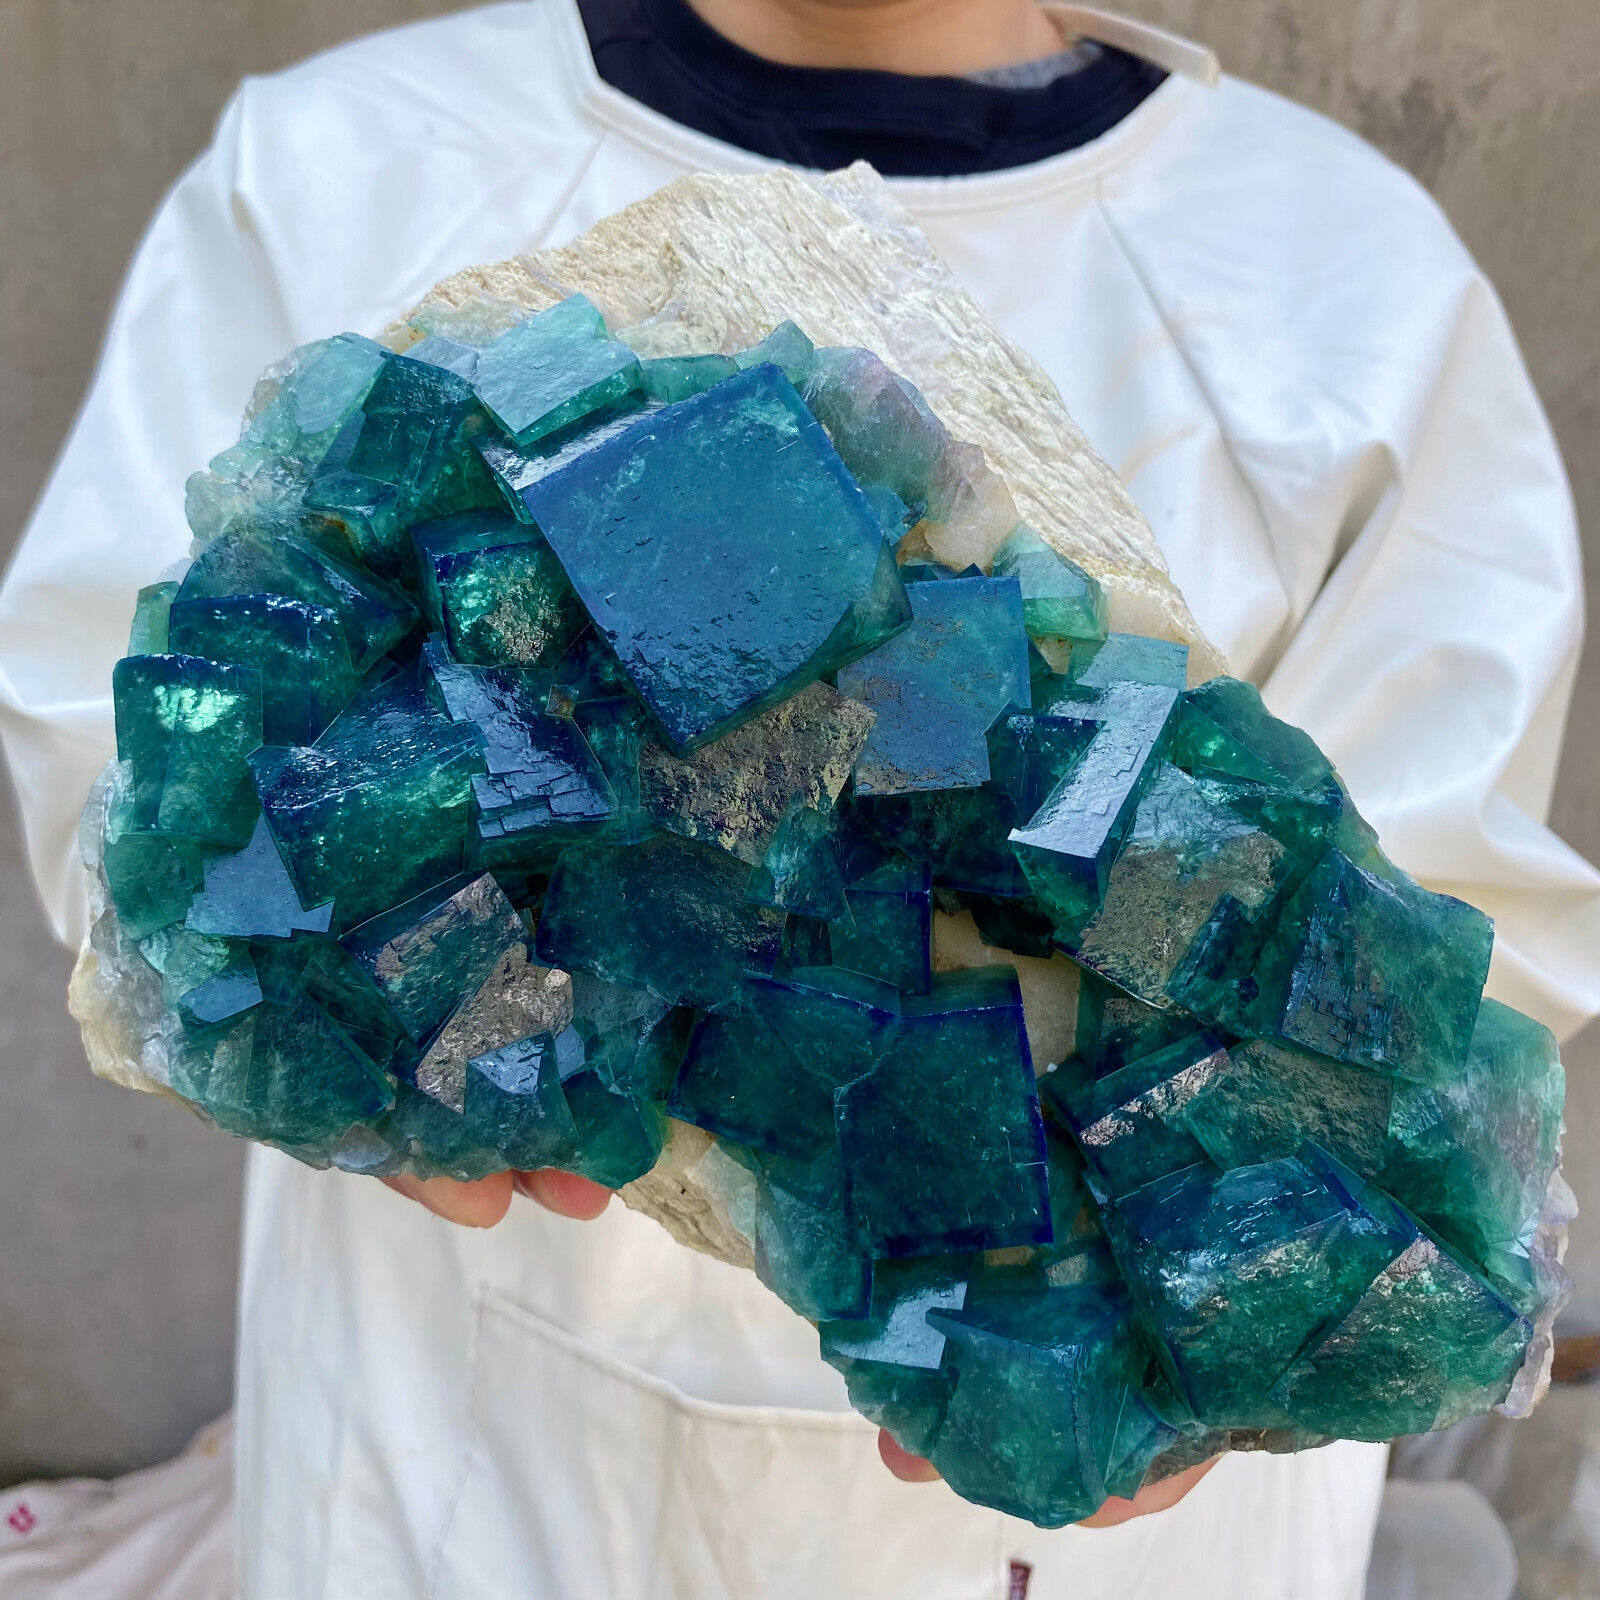 10lb Large NATURAL Green Cube FLUORITE Quartz Crystal Cluster Mineral Specimen